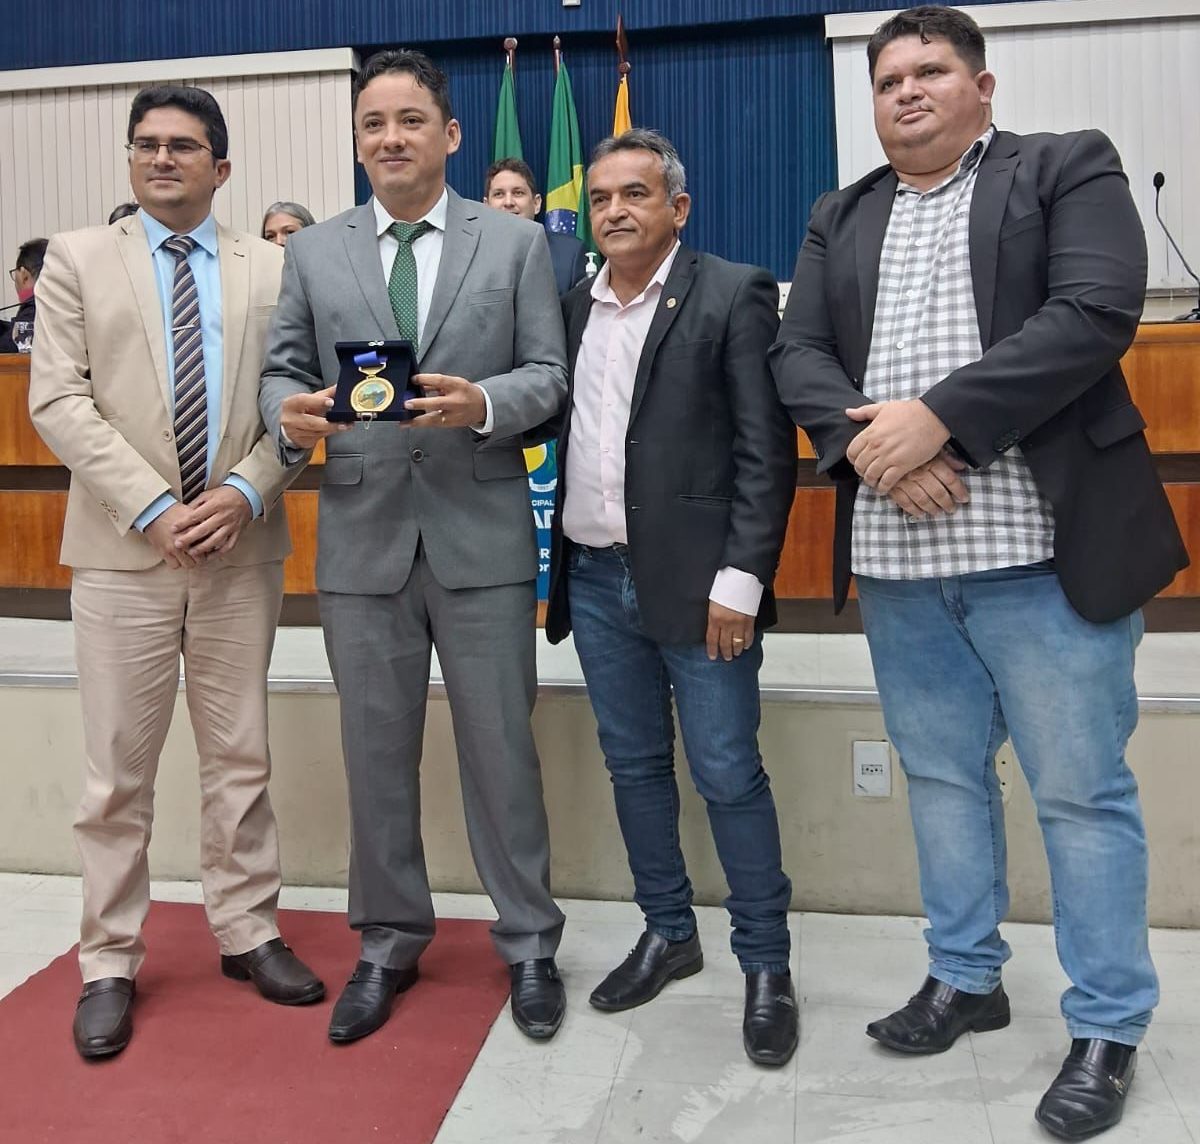 Defensor público é homenageado em Quixadá com a Medalha Cedro, maior honraria do município